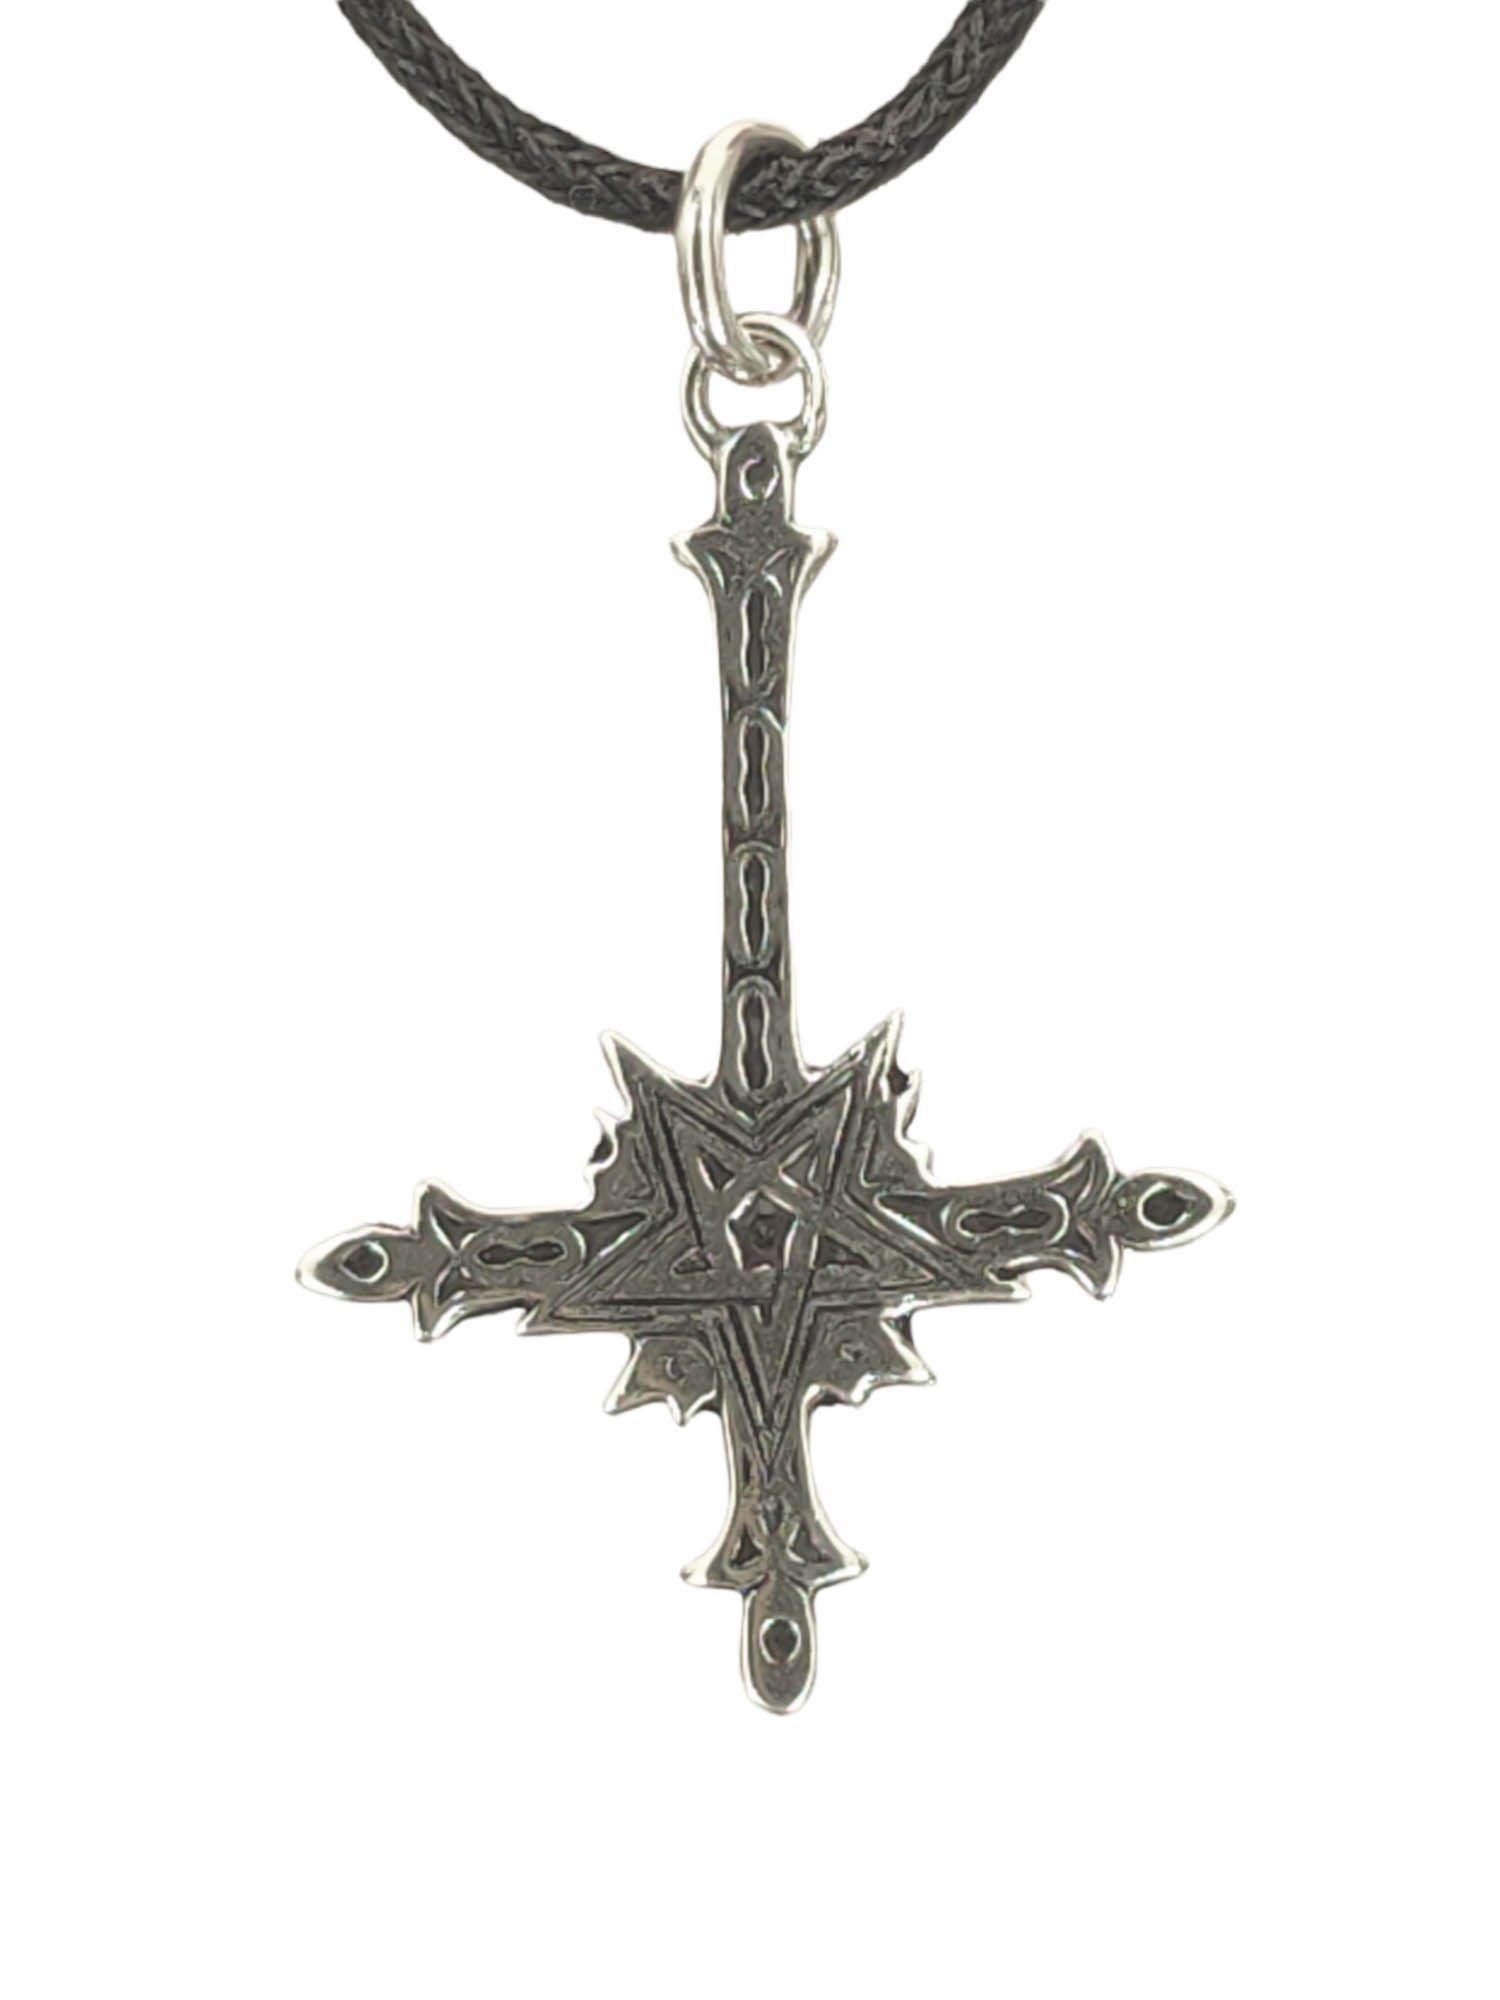 of Kreuz Kiss Silber Kettenanhänger Leather Sterling 925 Satan Luzifer umgedrehtes Pentagramm